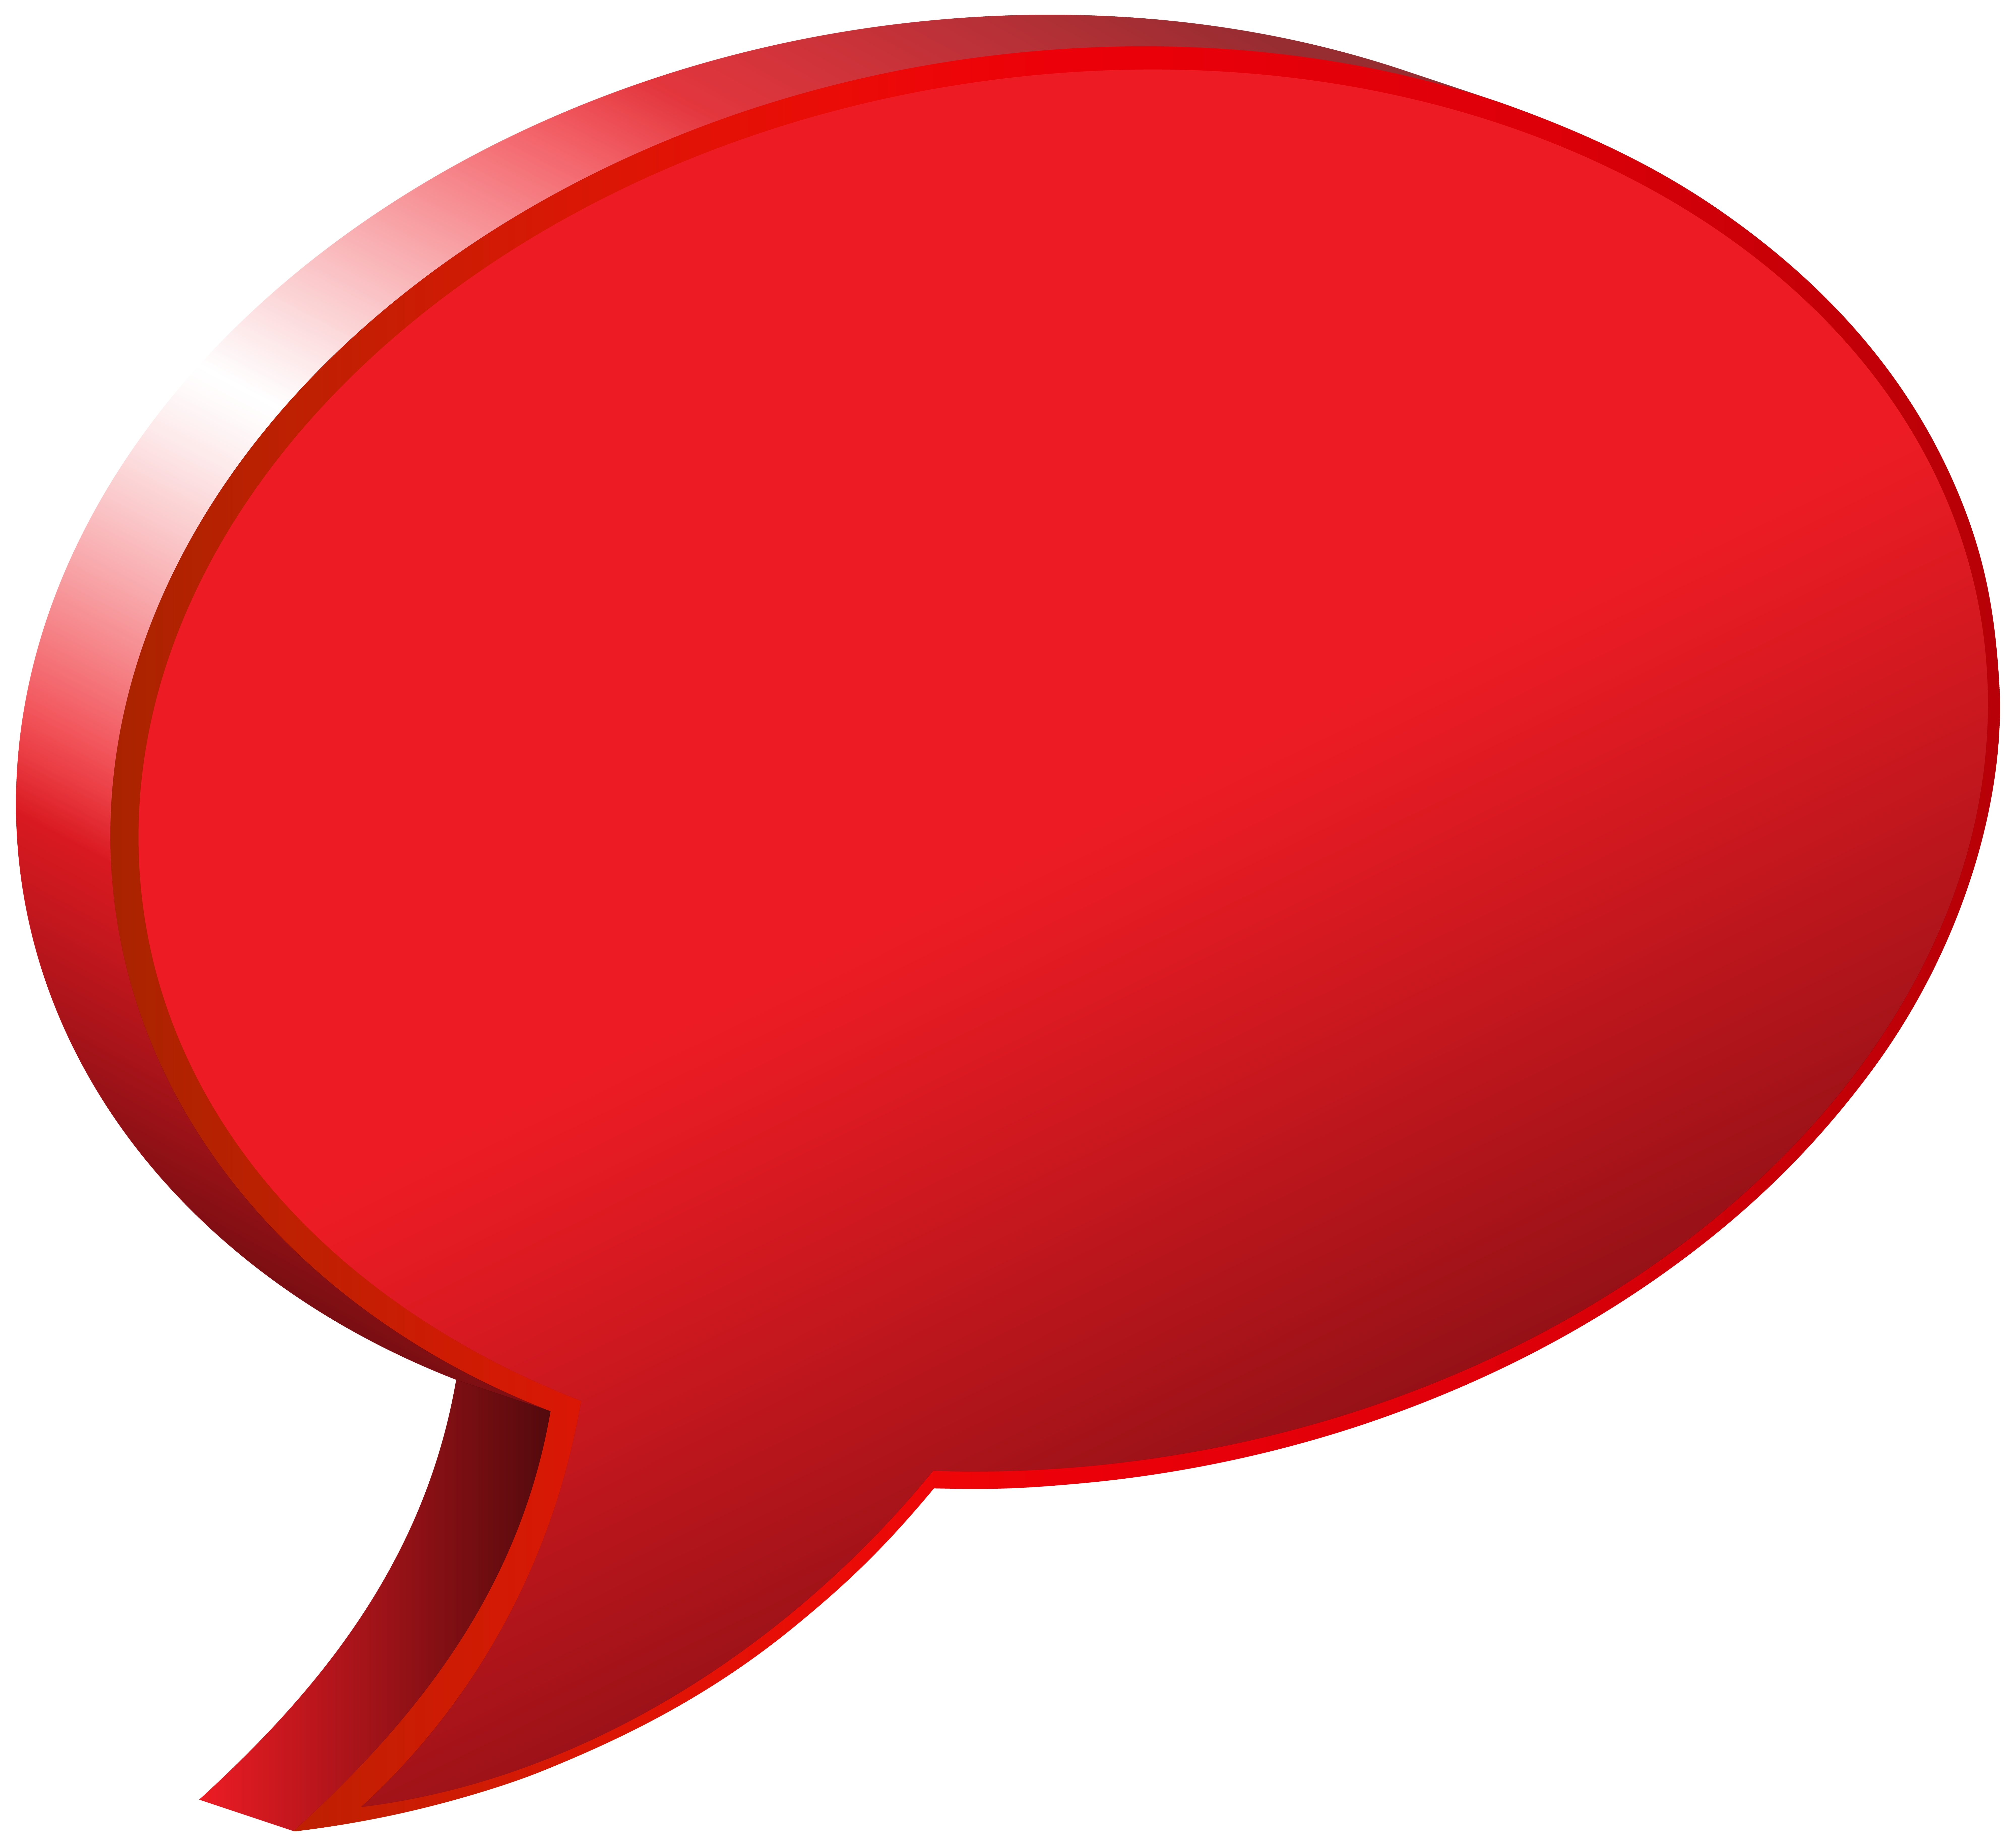 Speech red balloon PNG